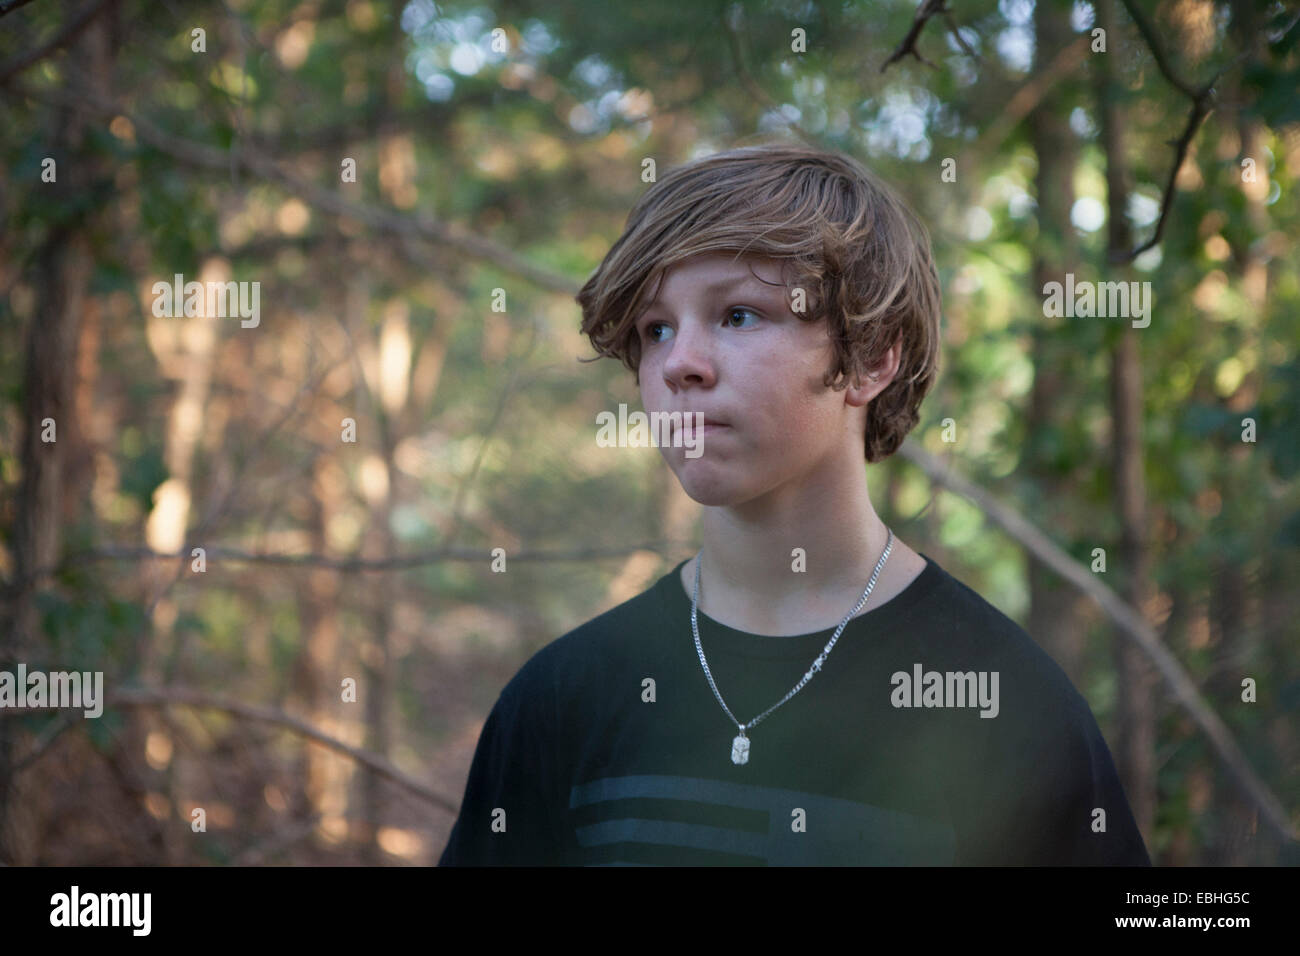 Ritratto di ragazzo adolescente nella foresta guardando lateralmente, Wichita Mountains National Wildlife Refuge, Indiahoma, Oklahoma, Stati Uniti d'America Foto Stock